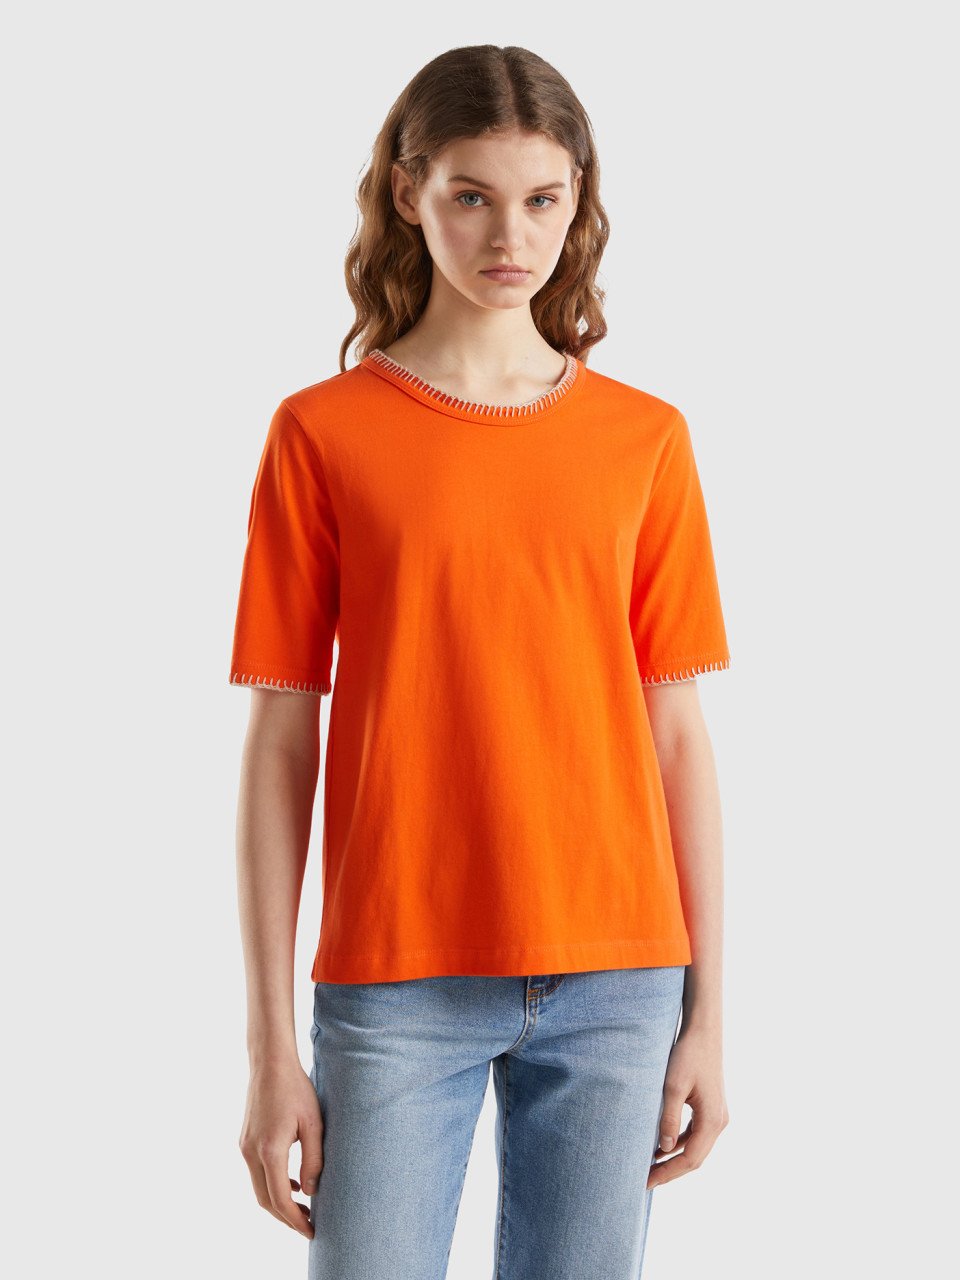 Benetton, Camiseta De Algodón Con Cuello Redondo, Naranja, Mujer